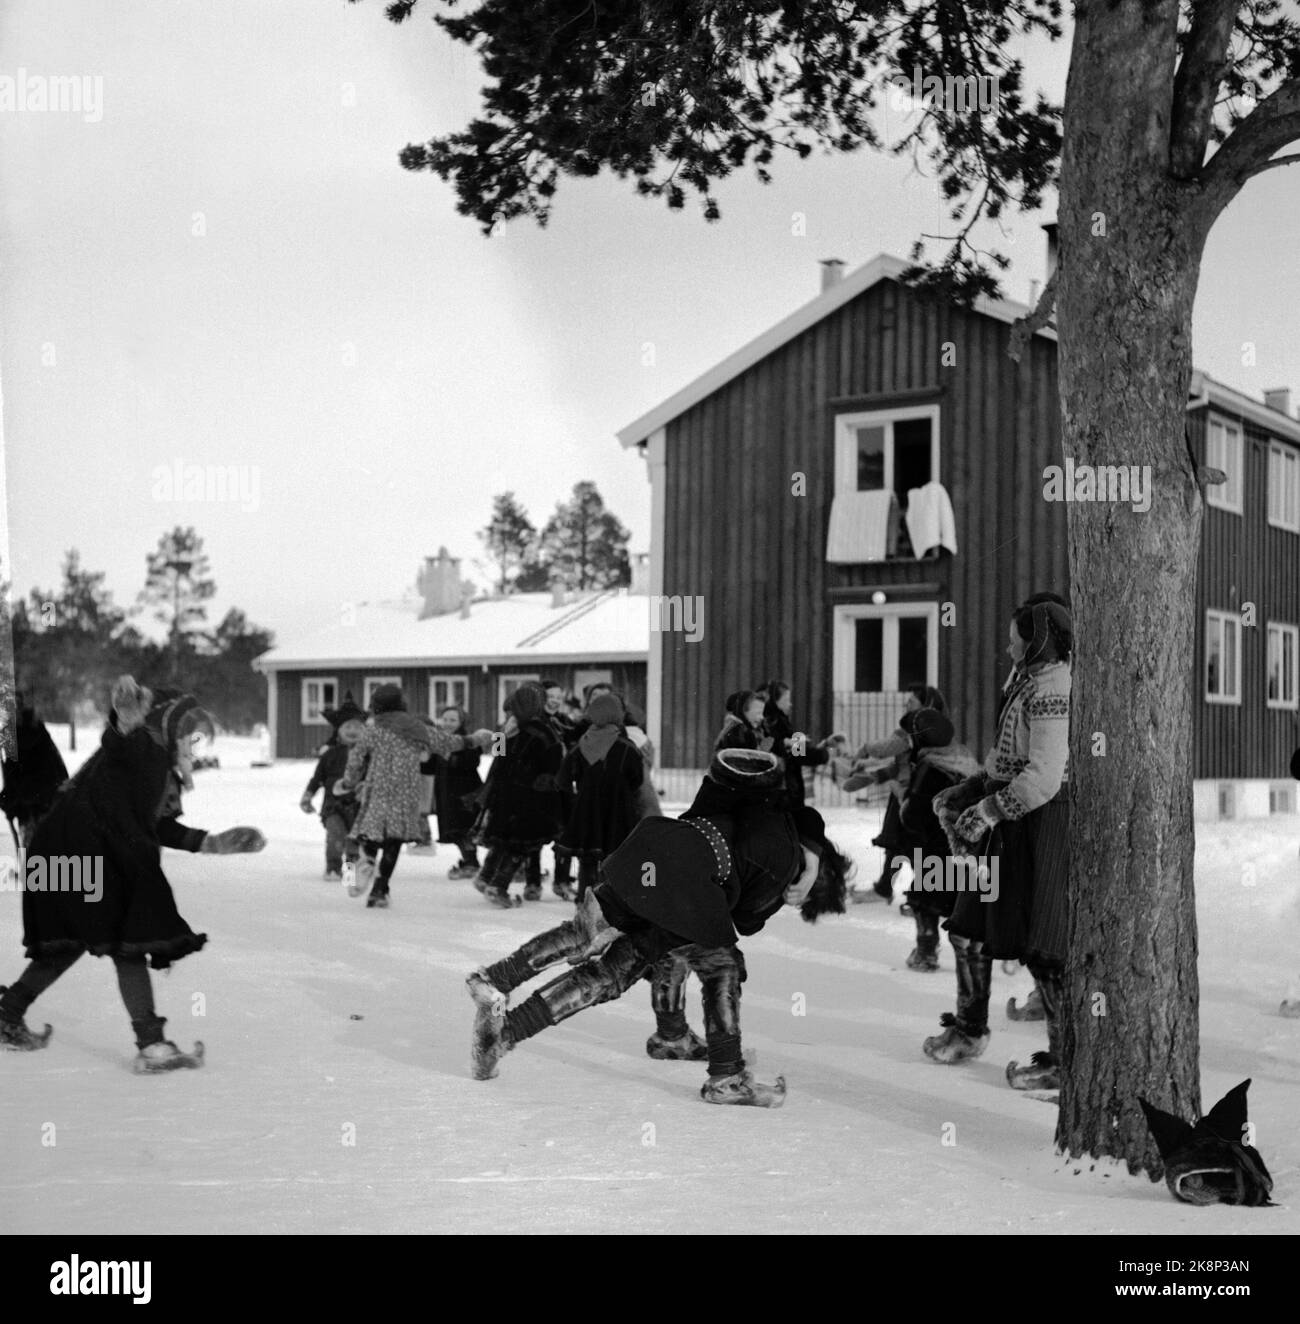 Karasjok, Finnmark, janvier 1950. De l'école d'embarquement pour les enfants en déplacement. Les enfants sâmes vivent à l'école d'embarquement. Les enfants sâmes ont la meilleure chose quand ils peuvent se déplier dans les produits gratuits. Ici, les enfants jouent dans la neige comme ils sont habitués à de la prairie. Photo: SV. A. Børretzen / courant / NTB Banque D'Images